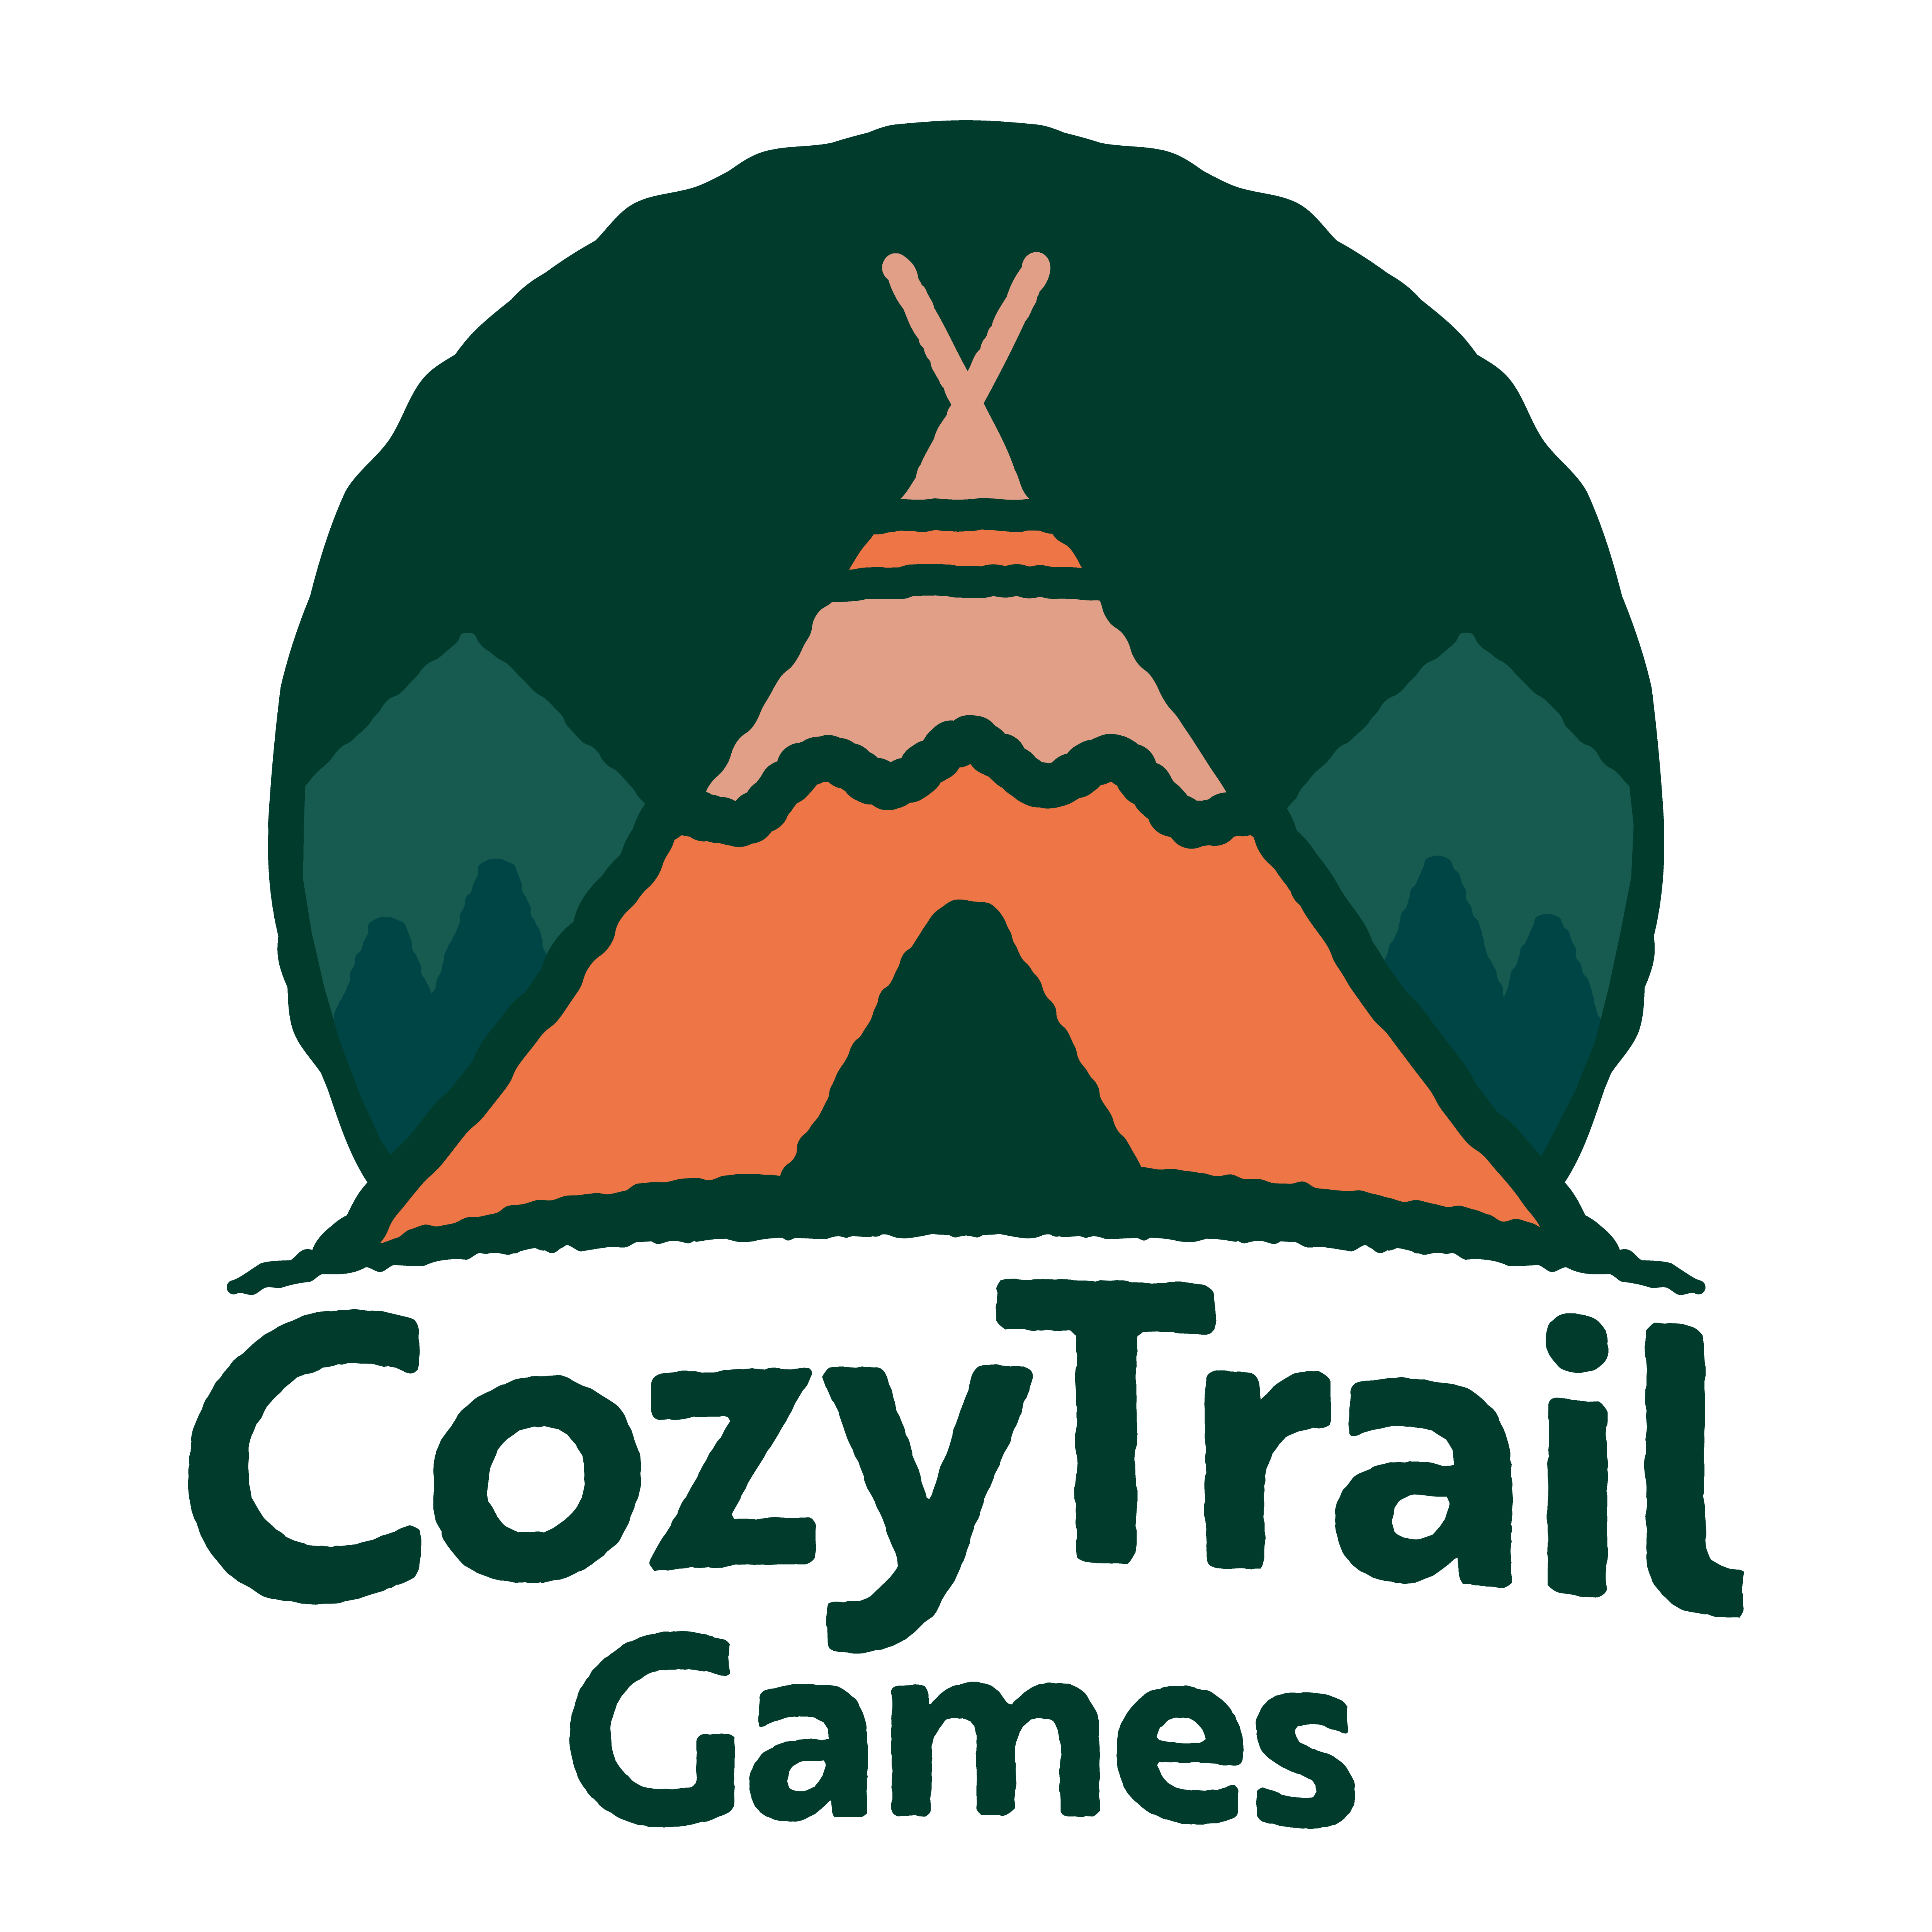 CozyTrail Games